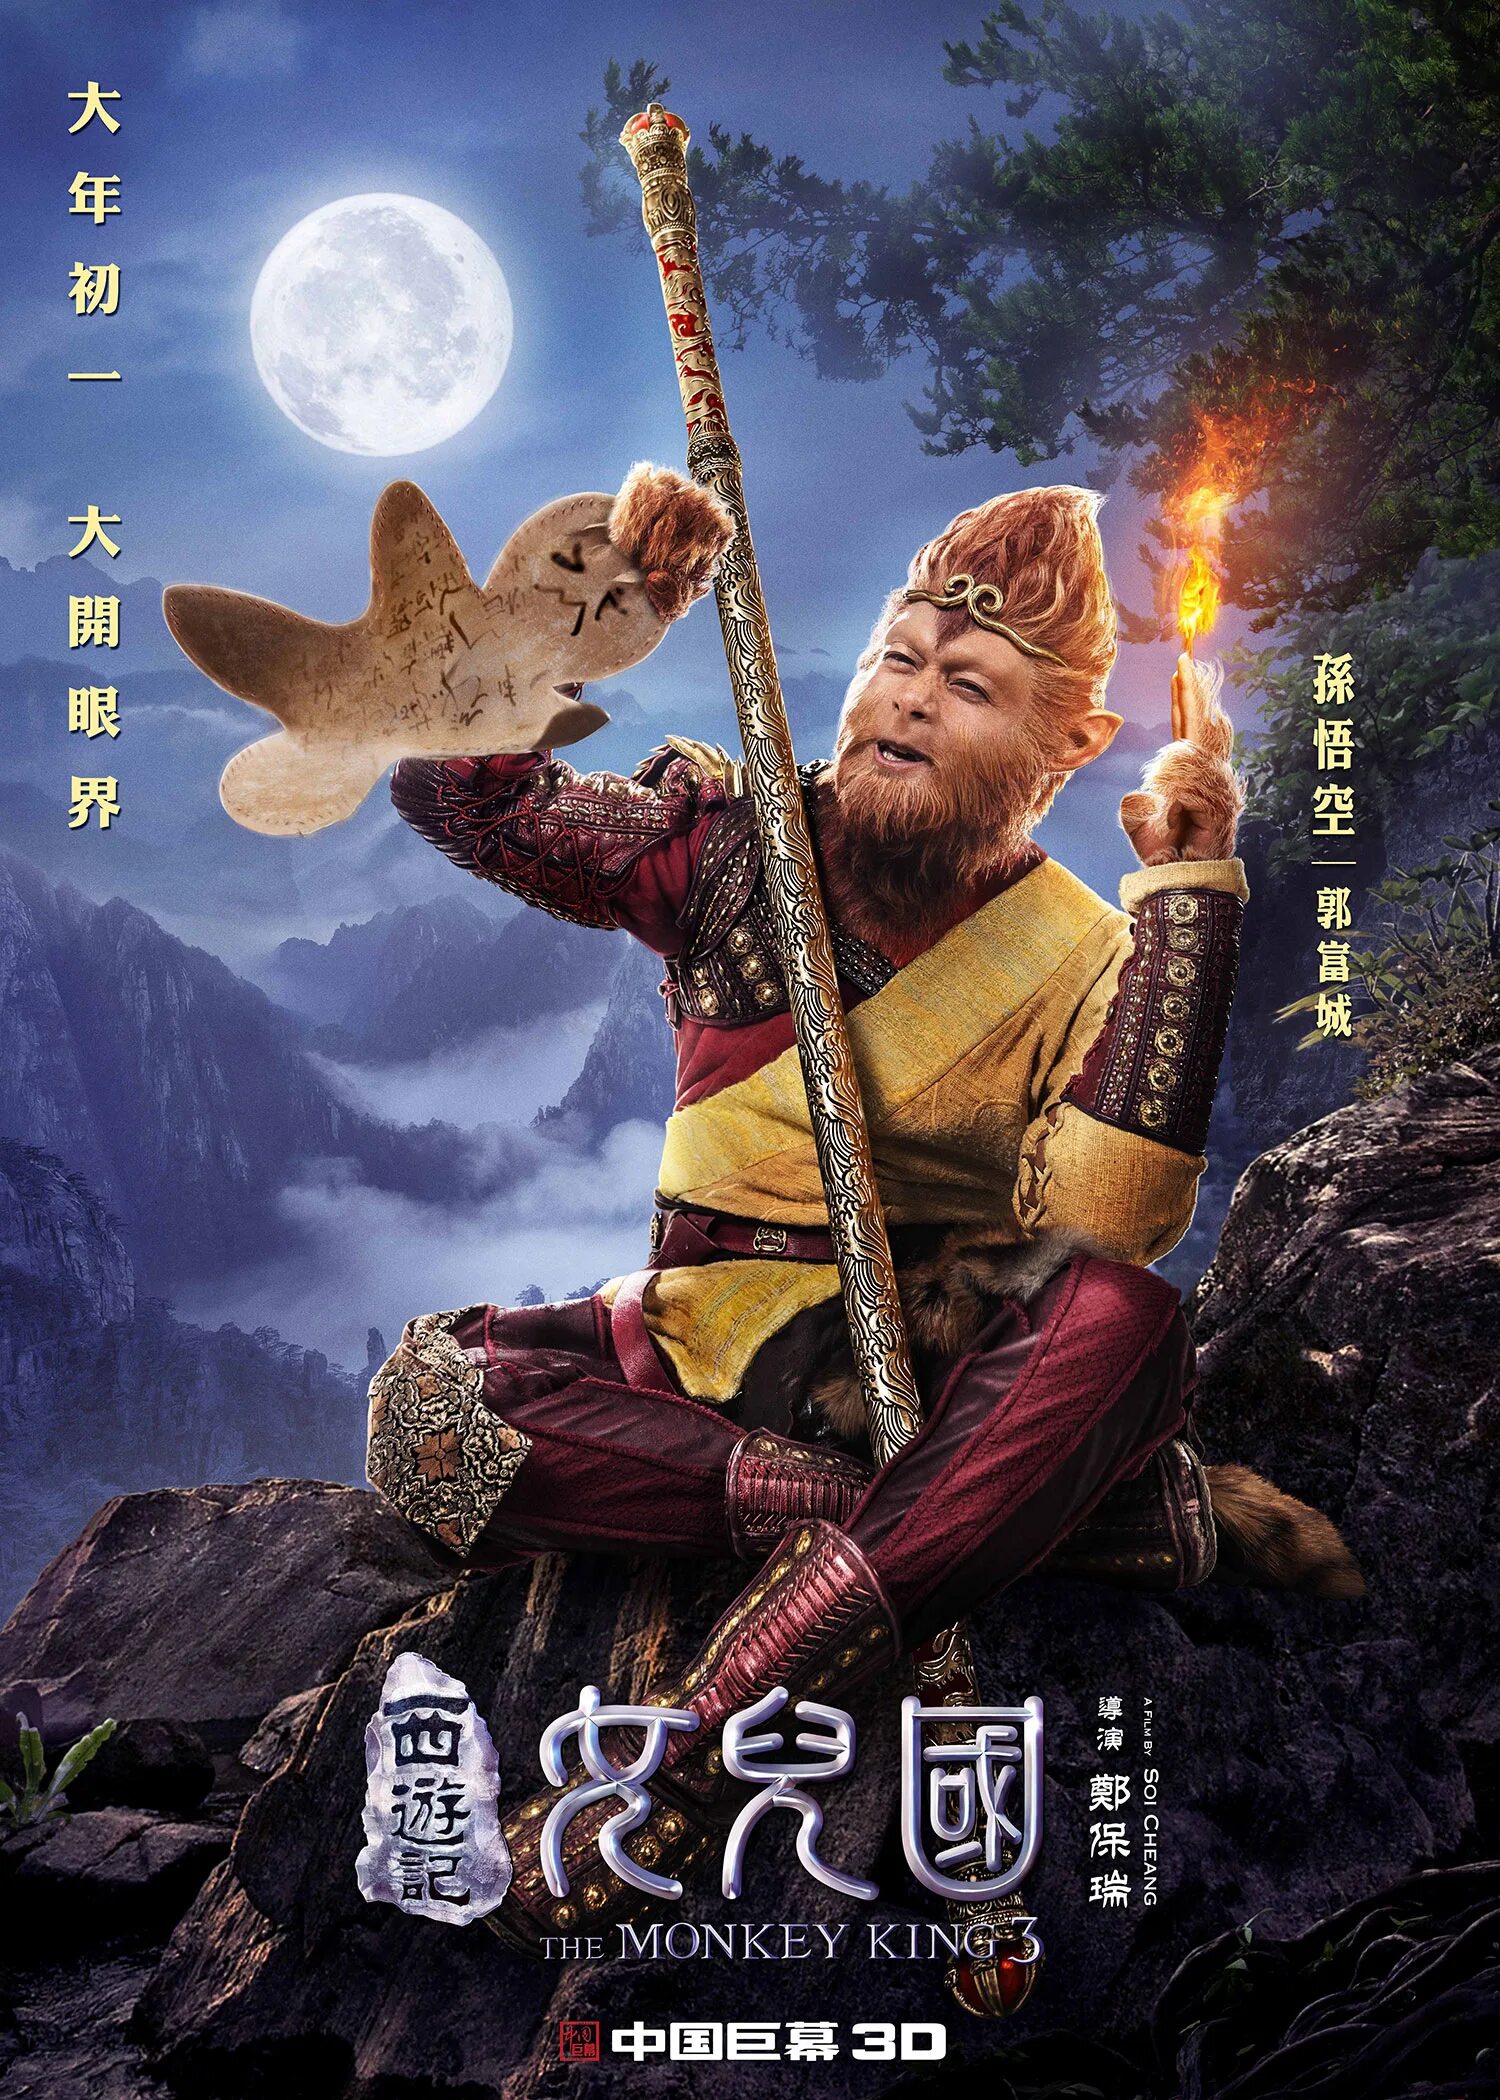 Обезьяна сунь укун. Укун царь обезьян the Monkey King 2017 the Monkey King. Китайский Король обезьян Сунь Укун.